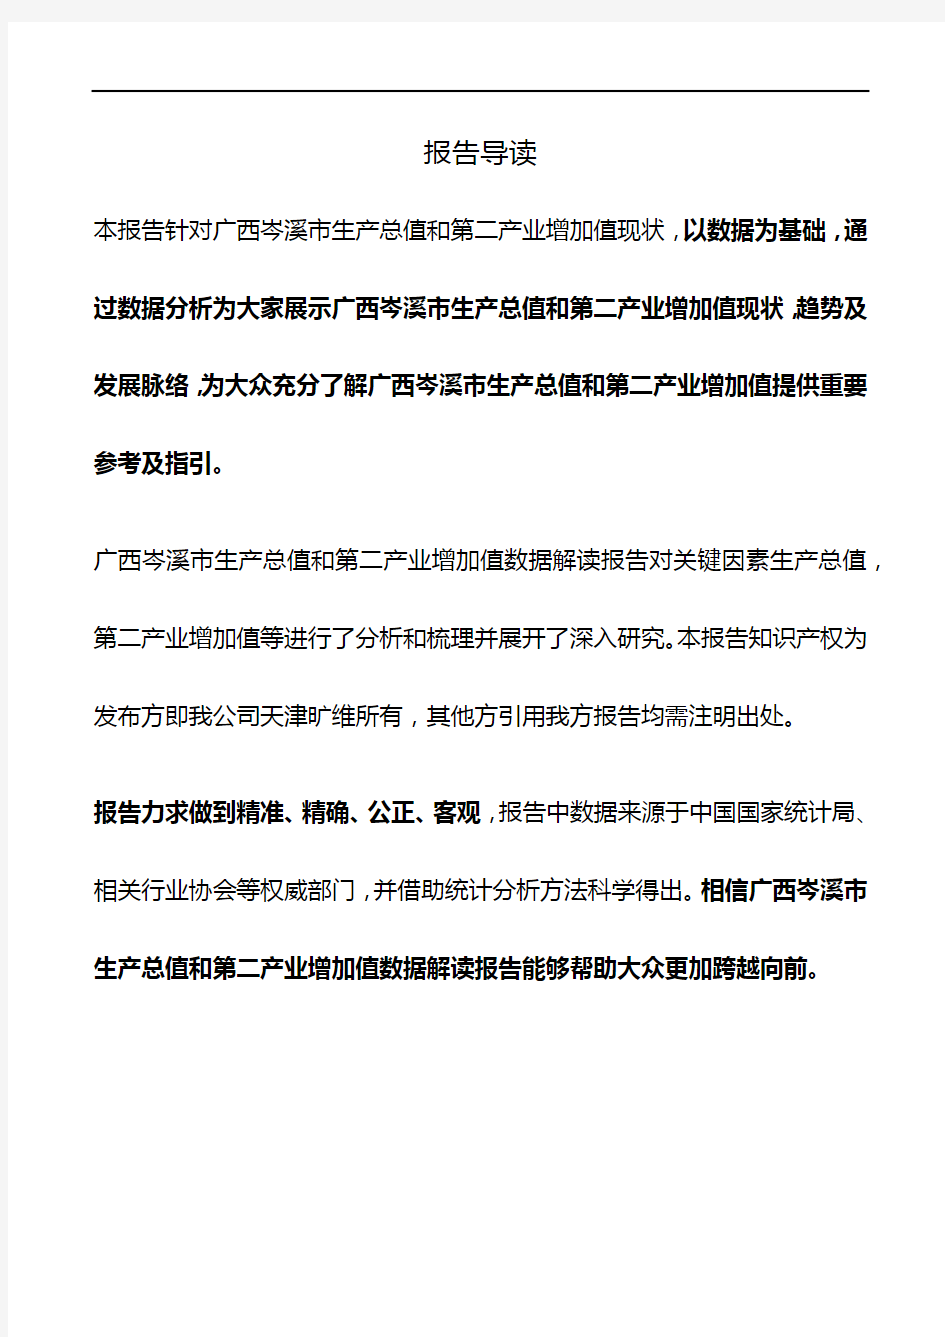 广西岑溪市生产总值和第二产业增加值3年数据解读报告2019版